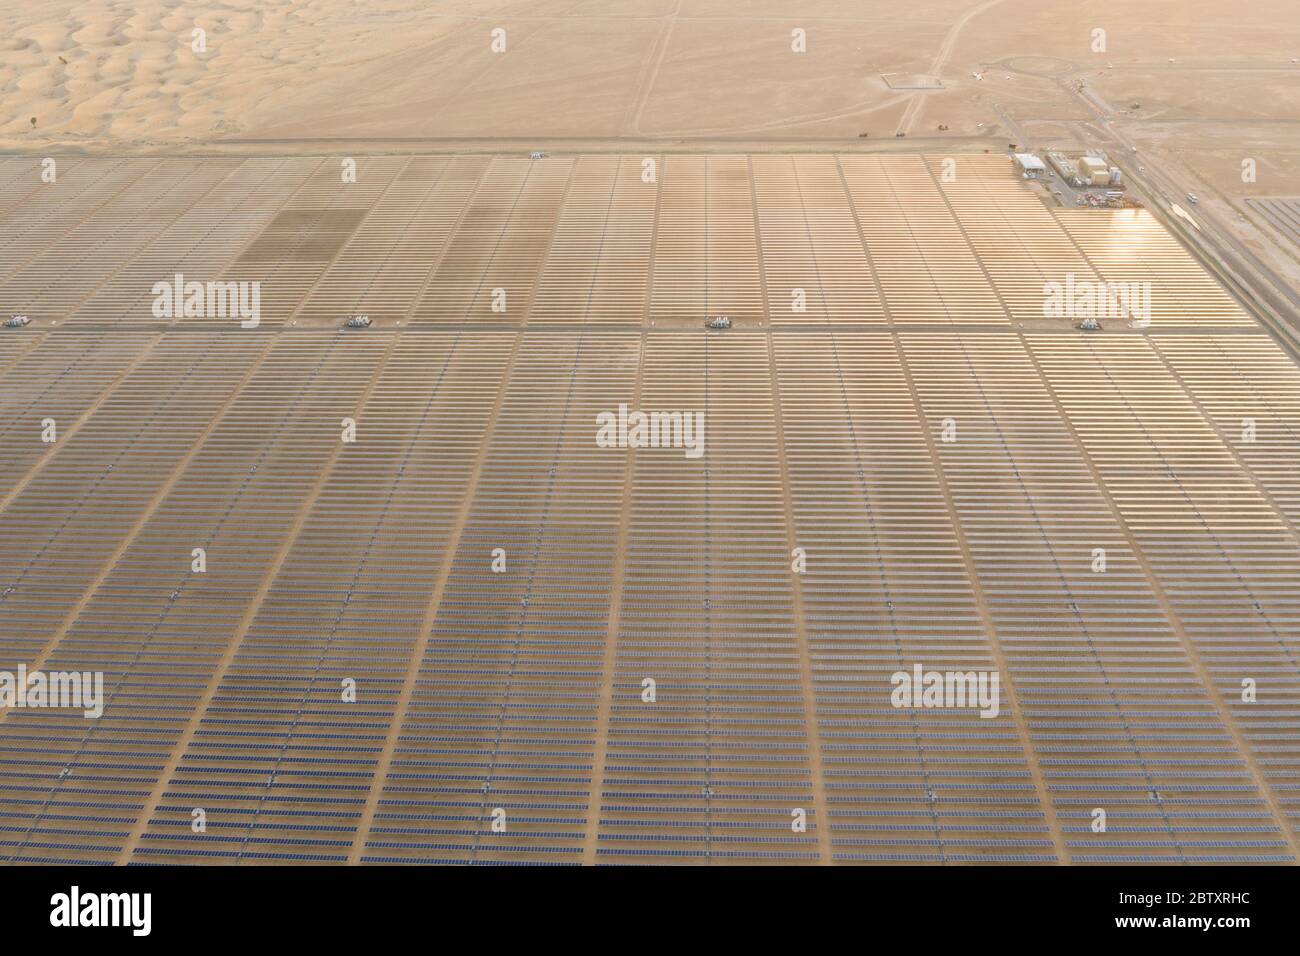 Vue aérienne d'un paysage avec une ferme de panneaux solaires photovoltaïques produisant une énergie renouvelable durable dans une centrale électrique du désert au coucher du soleil. Banque D'Images